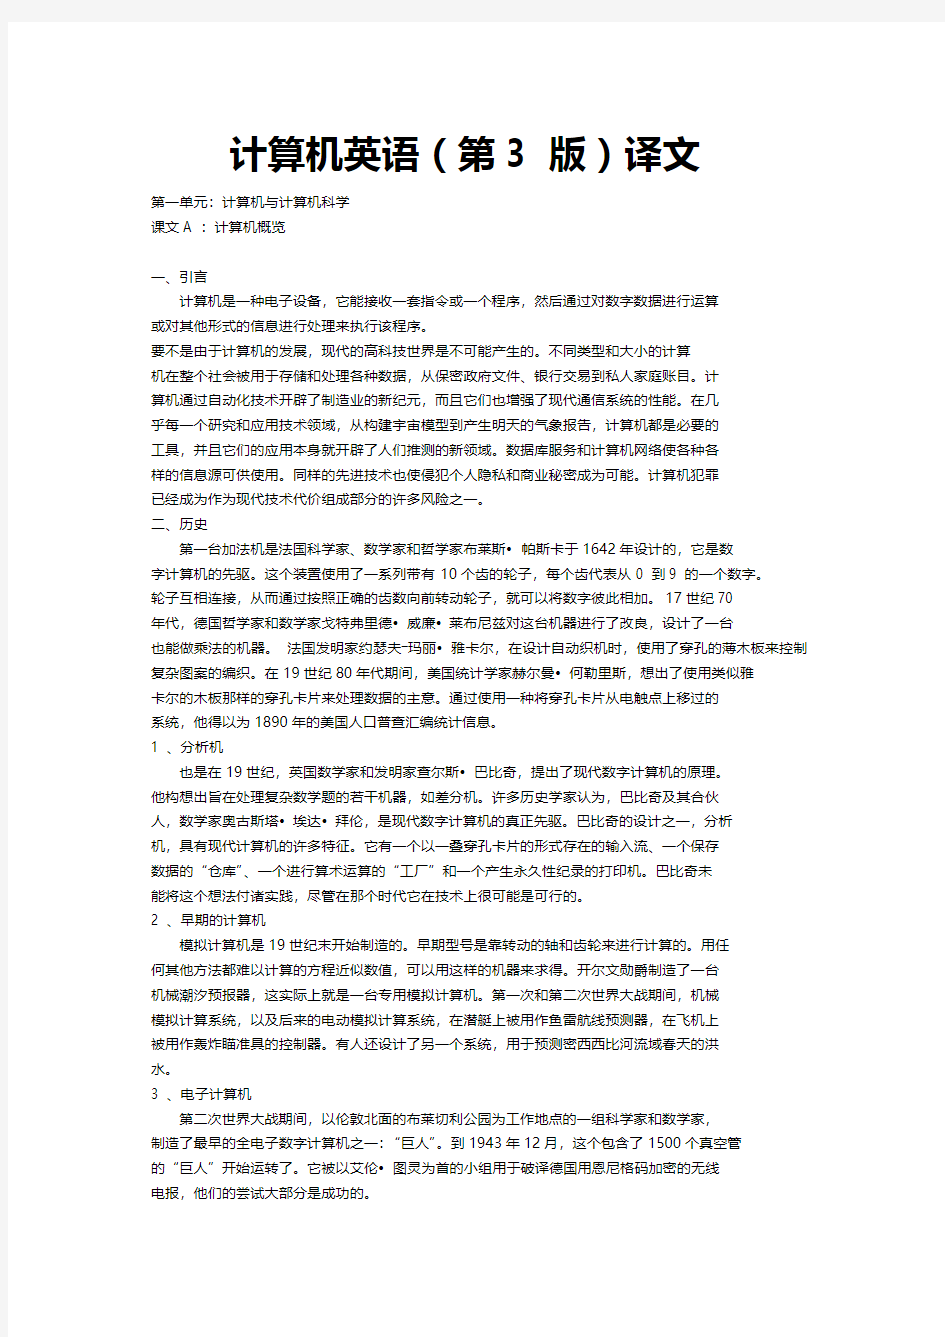 广东海洋大学学子下载   计算机英语(第4版)翻译和课后习题答案  完整版